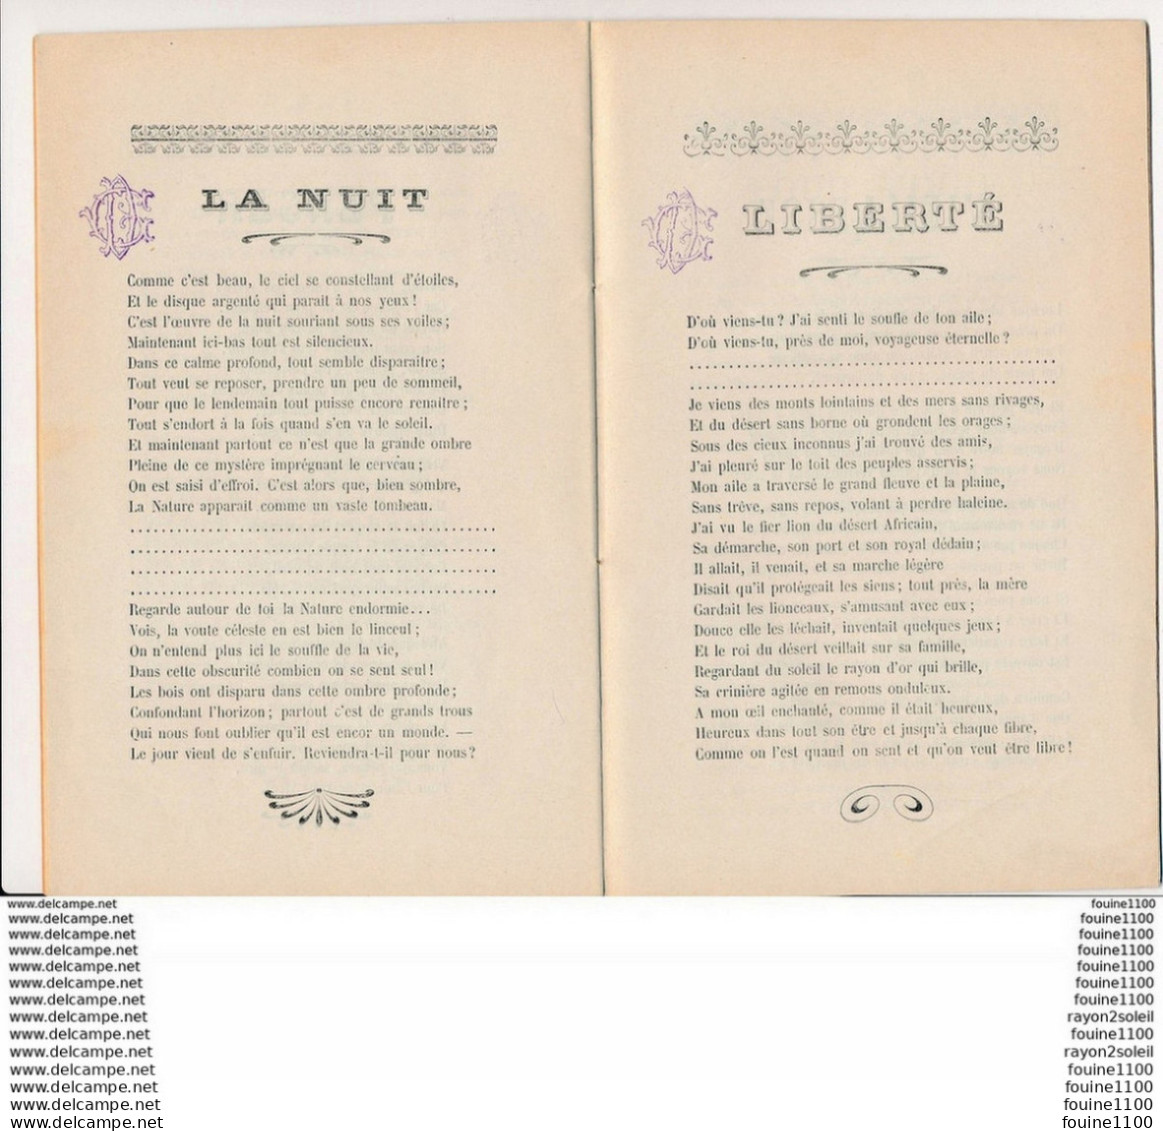 Fascicule  Vérités Poèmes Poesies De Léonce Mourier Avec Dédicace Autographe - French Authors